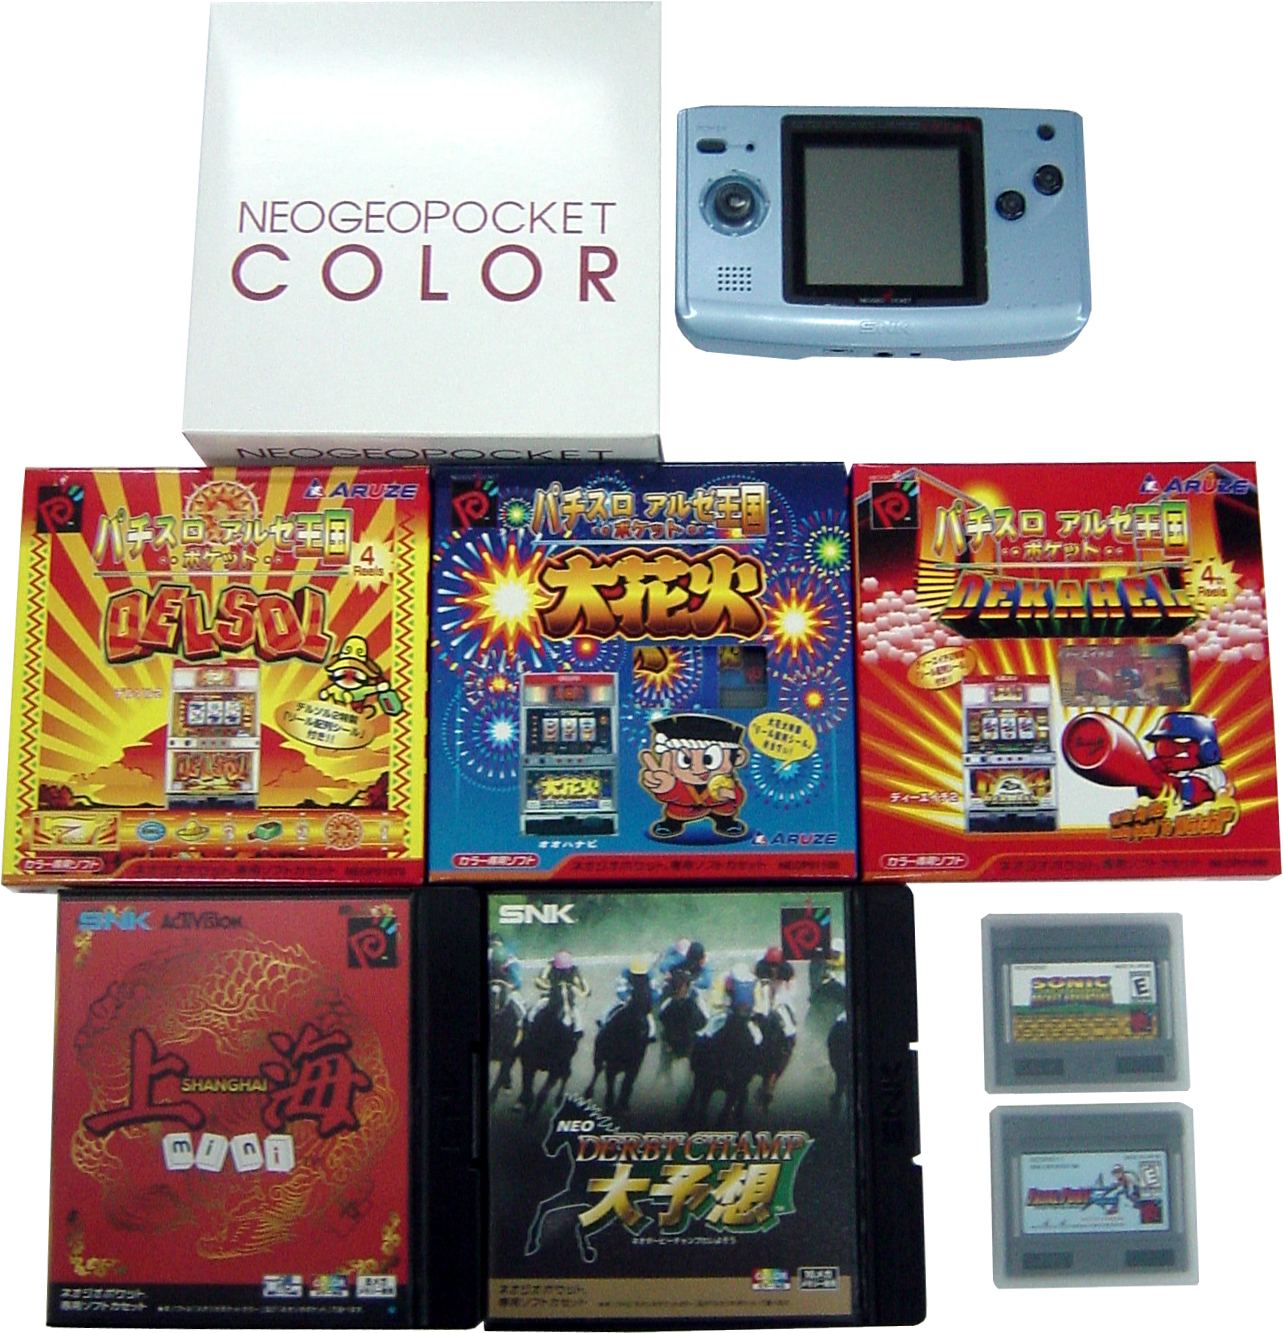 NeoGeo Pocket Color Bundle (incl. 7 games) - Bitcoin & Lightning 